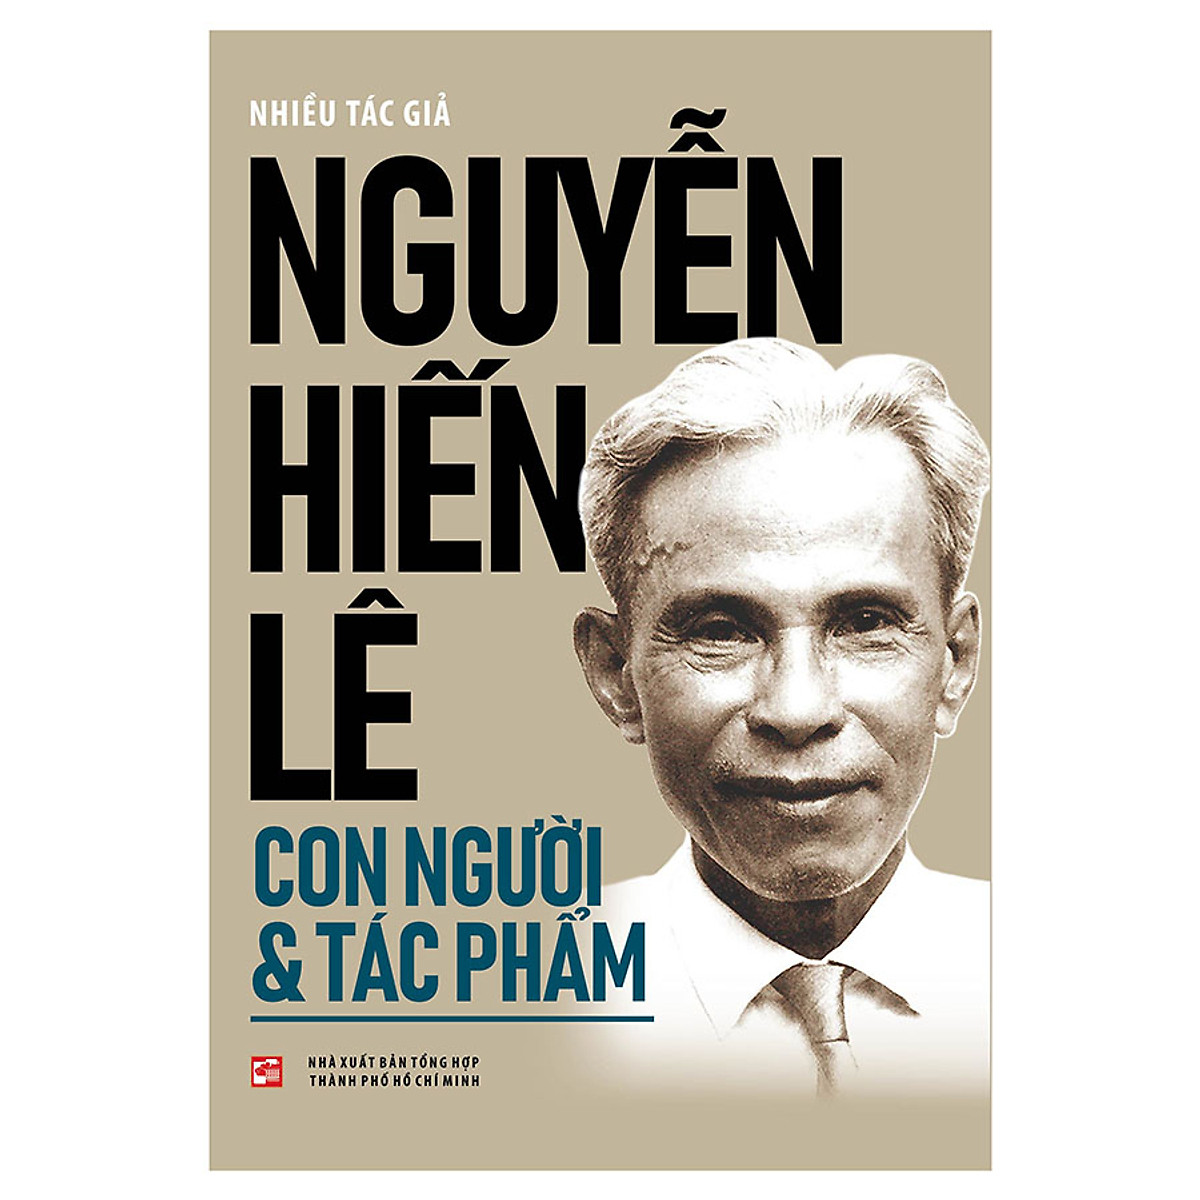 Nguyễn Hiến Lê – Con Người & Tác Phẩm